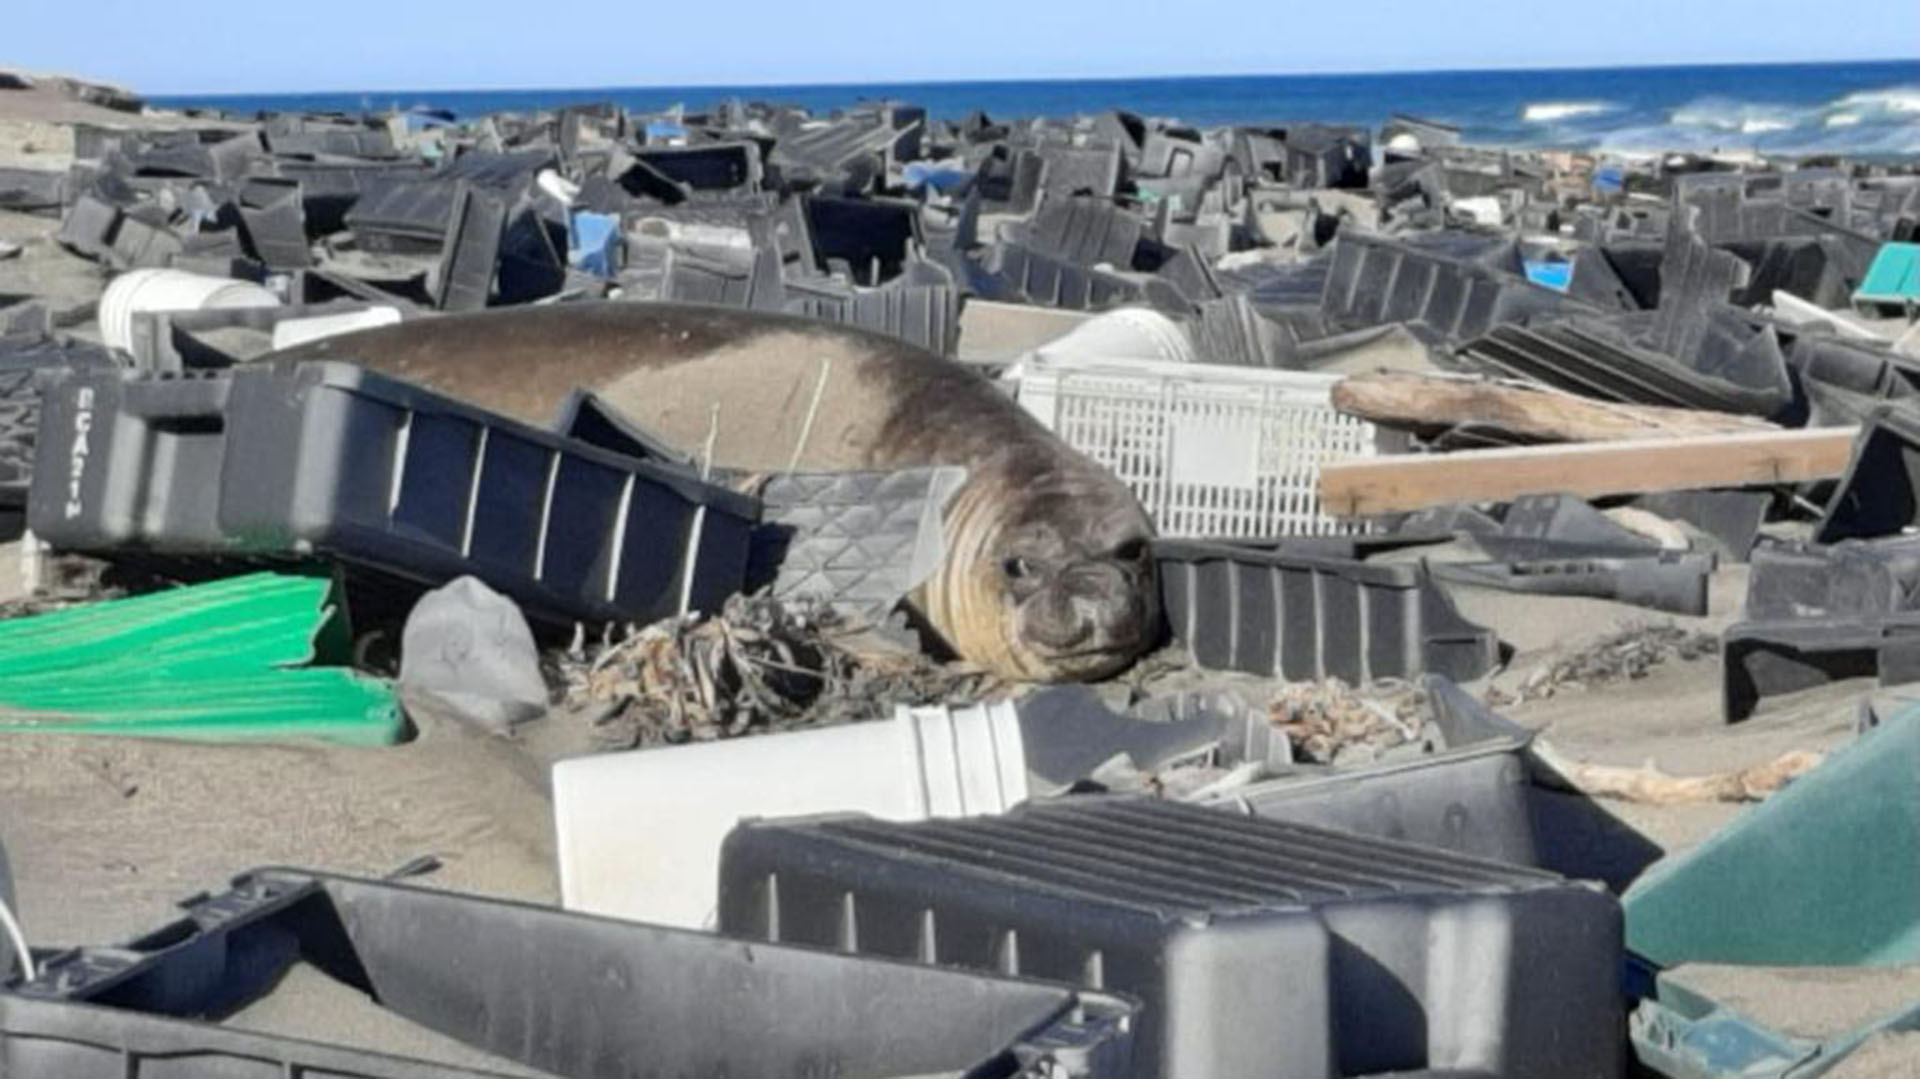 La zona del Golfo Nuevo fue noticia por la aparición de desperdicios plásticos en la costa proveniente de los desechos de la industria pesquera